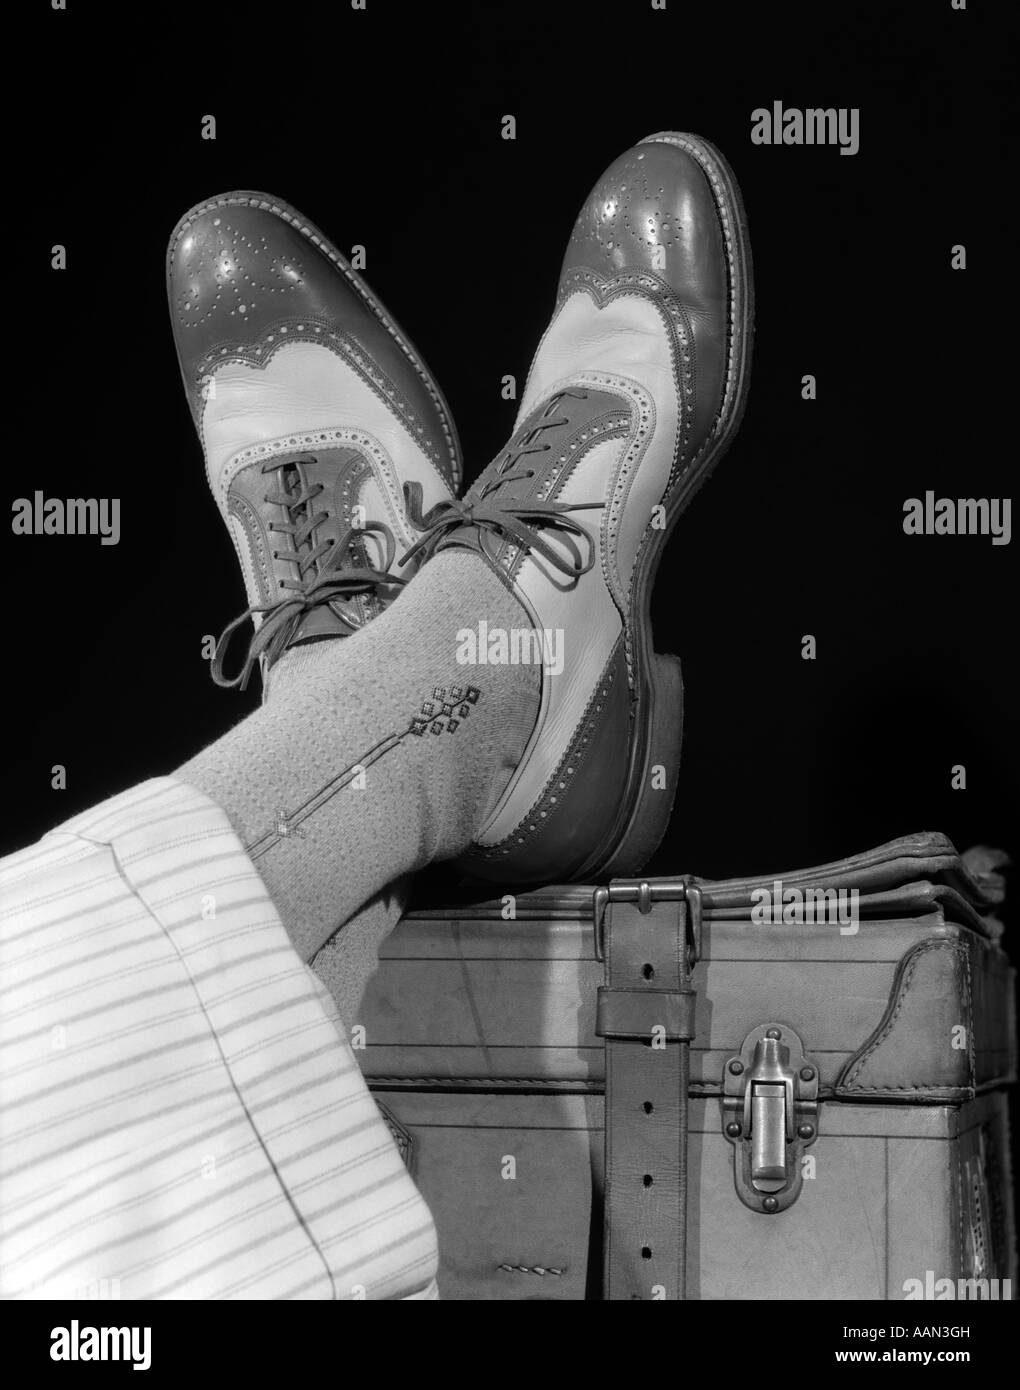 Années 1930 Années 1940 pieds croisés d'un homme portant l'extrémité de l'AILE DEUX TONS SPECTATOR SHOES Chaussettes de soie et laine blanche à rayures PANTALON MENOTTÉES Banque D'Images